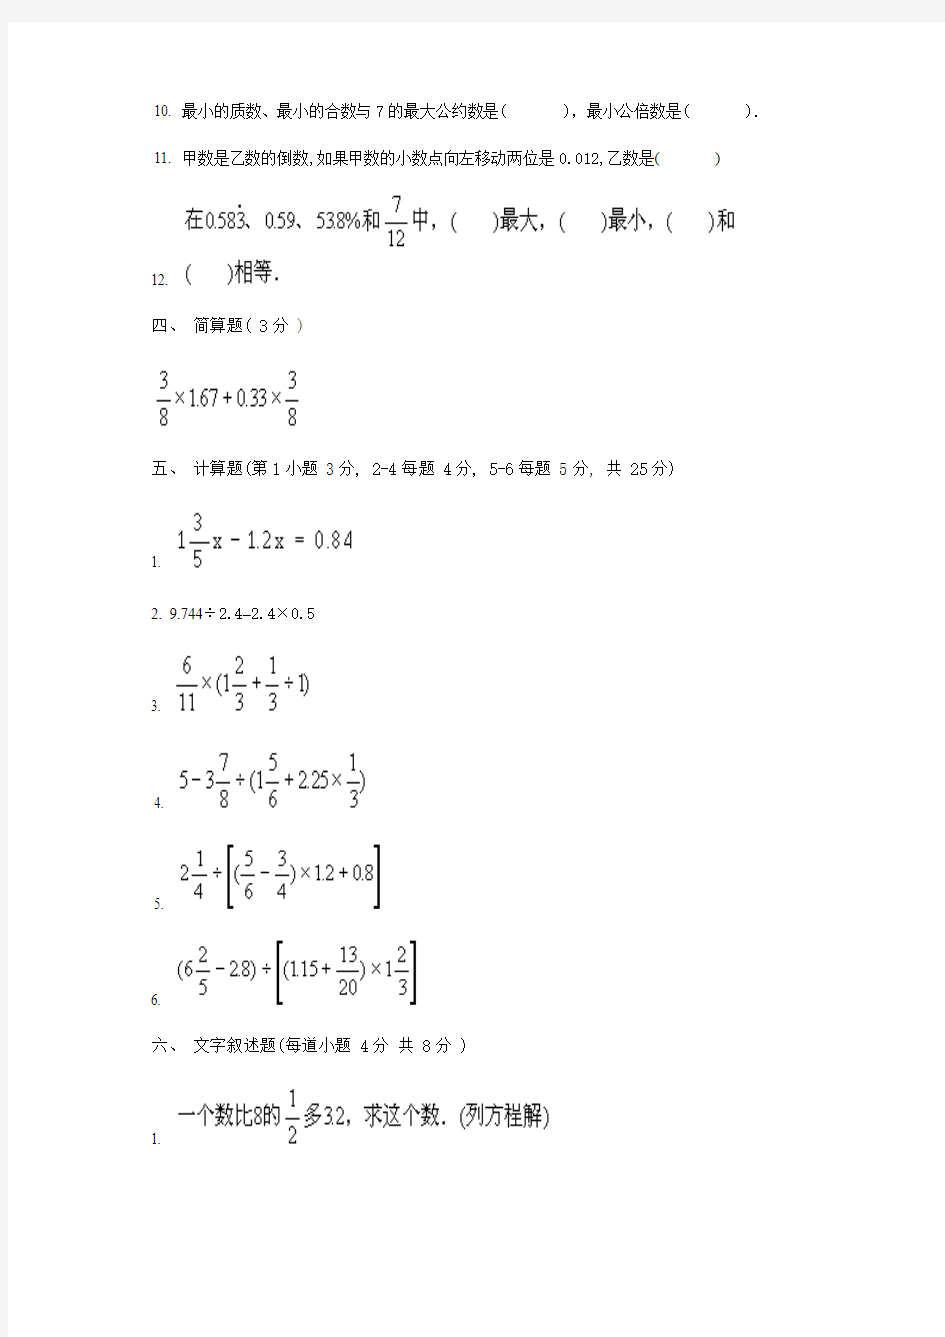 2012南京市某中学小升初入学考试数学题库